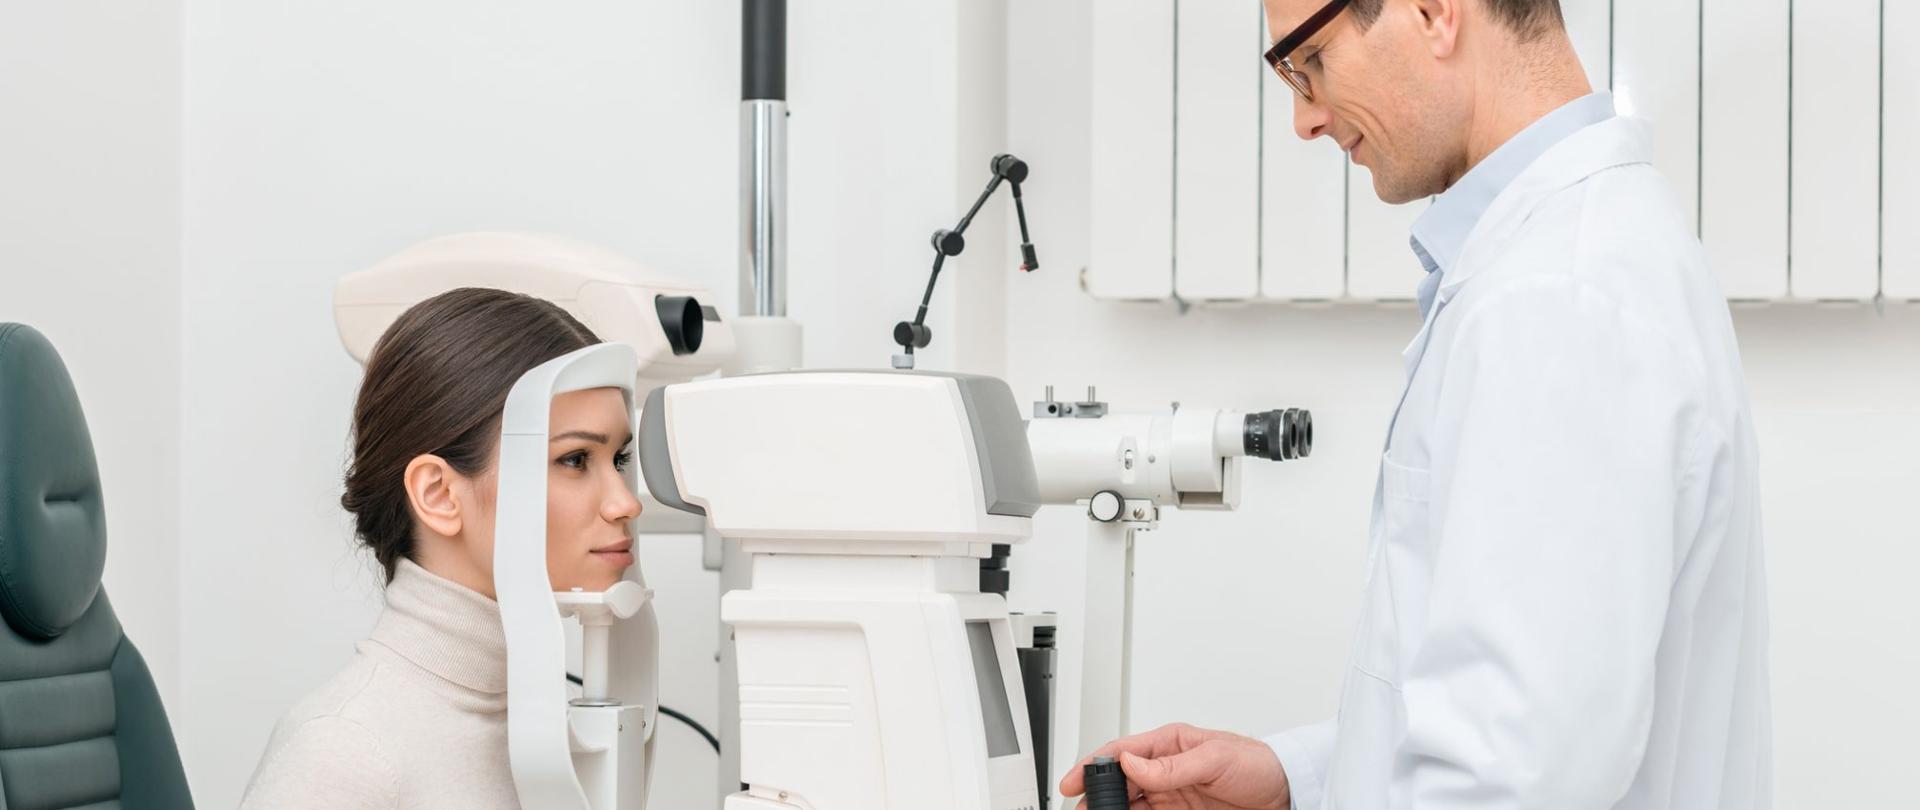 Na zdjęciu jest widoczne wykonywanie badania oczu pacjentce przez lekarza.